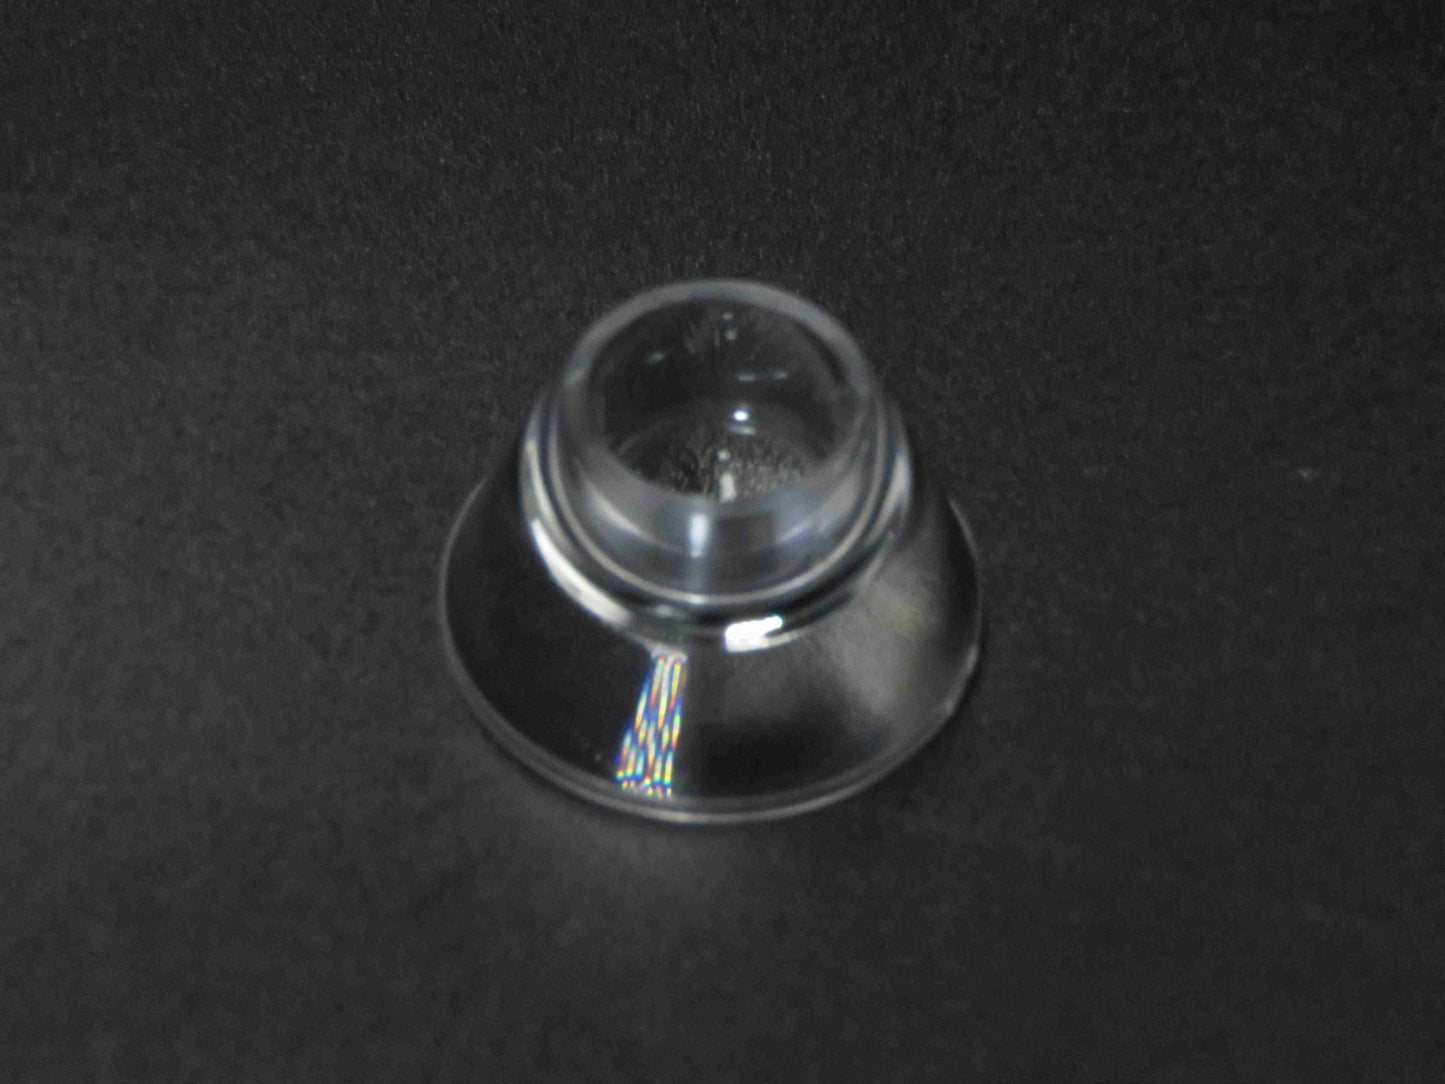 TIR Lens Reflector Collimator 6-60 درجة عدسة بصريات مصباح يدوي لمصباح LED